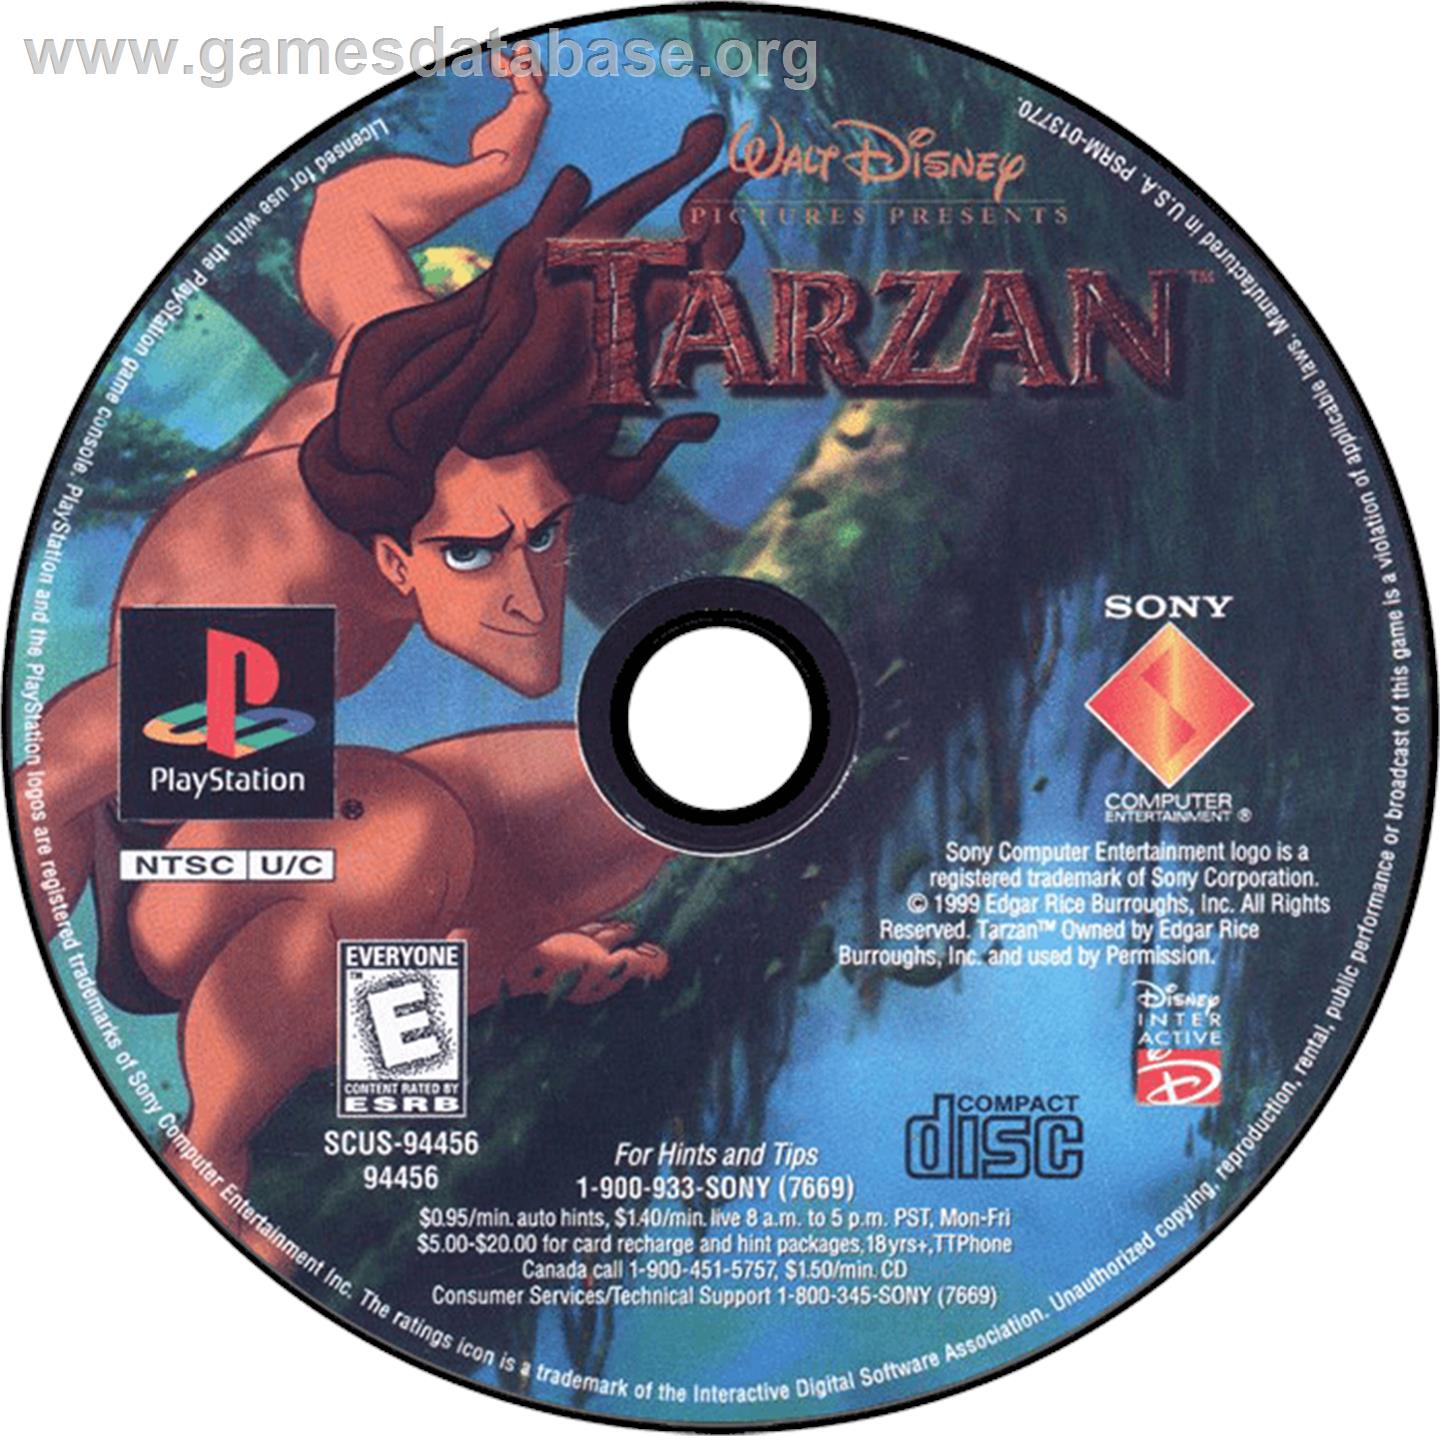 Disney's Tarzan - Sony Playstation - Artwork - Disc